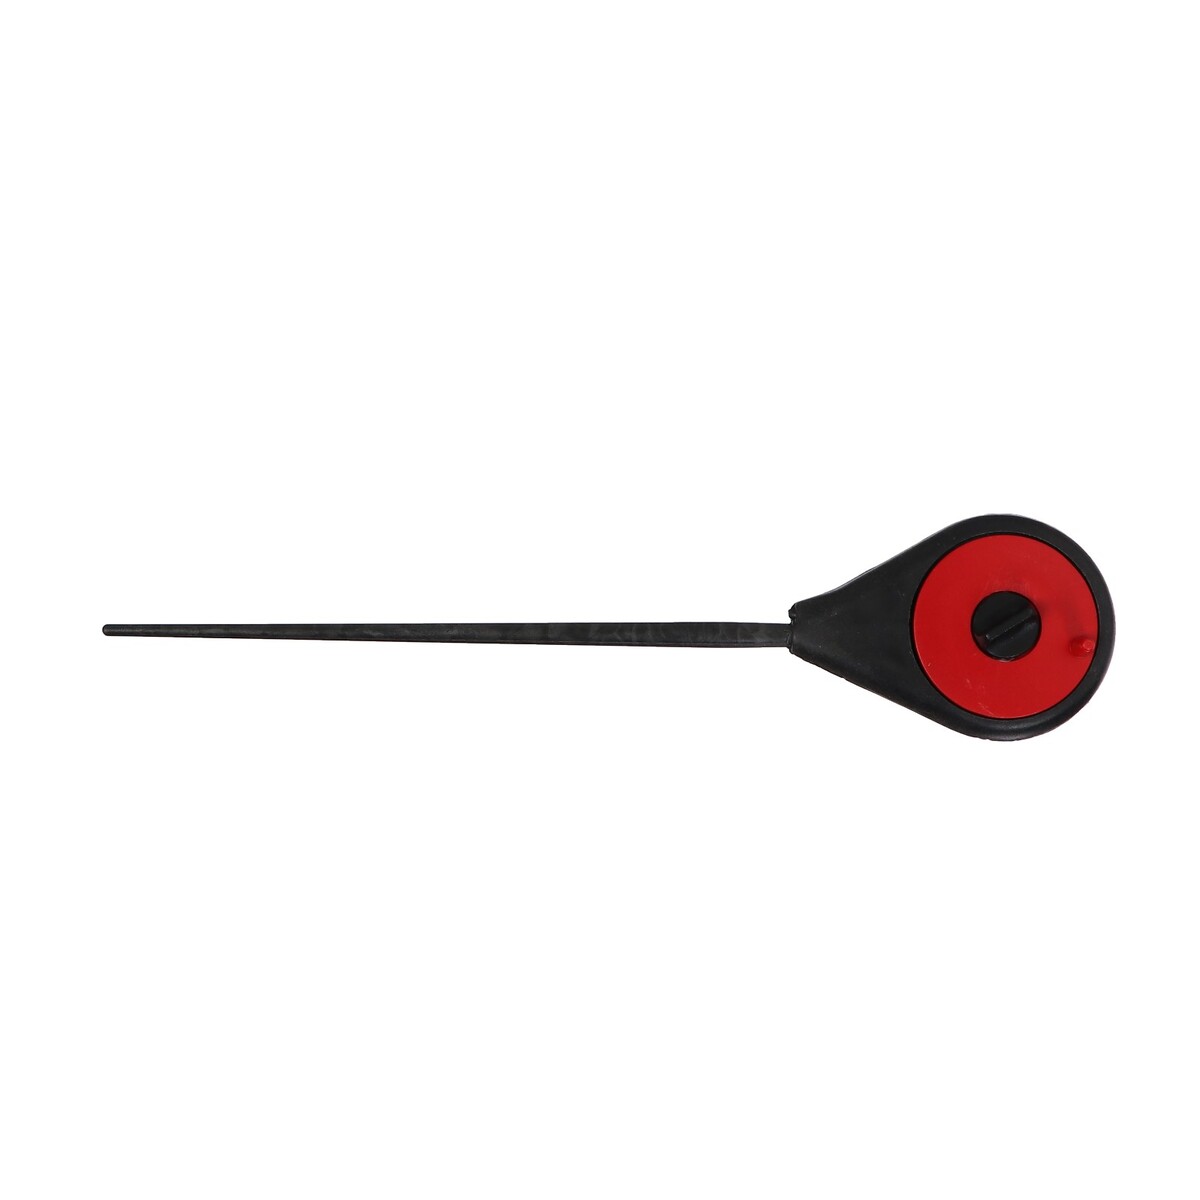 Удочка зимняя балалайка, цвет черный красный, hfb-18 шина зимняя нешипуемая roadmarch snowrover 868 245 60 r18 105h